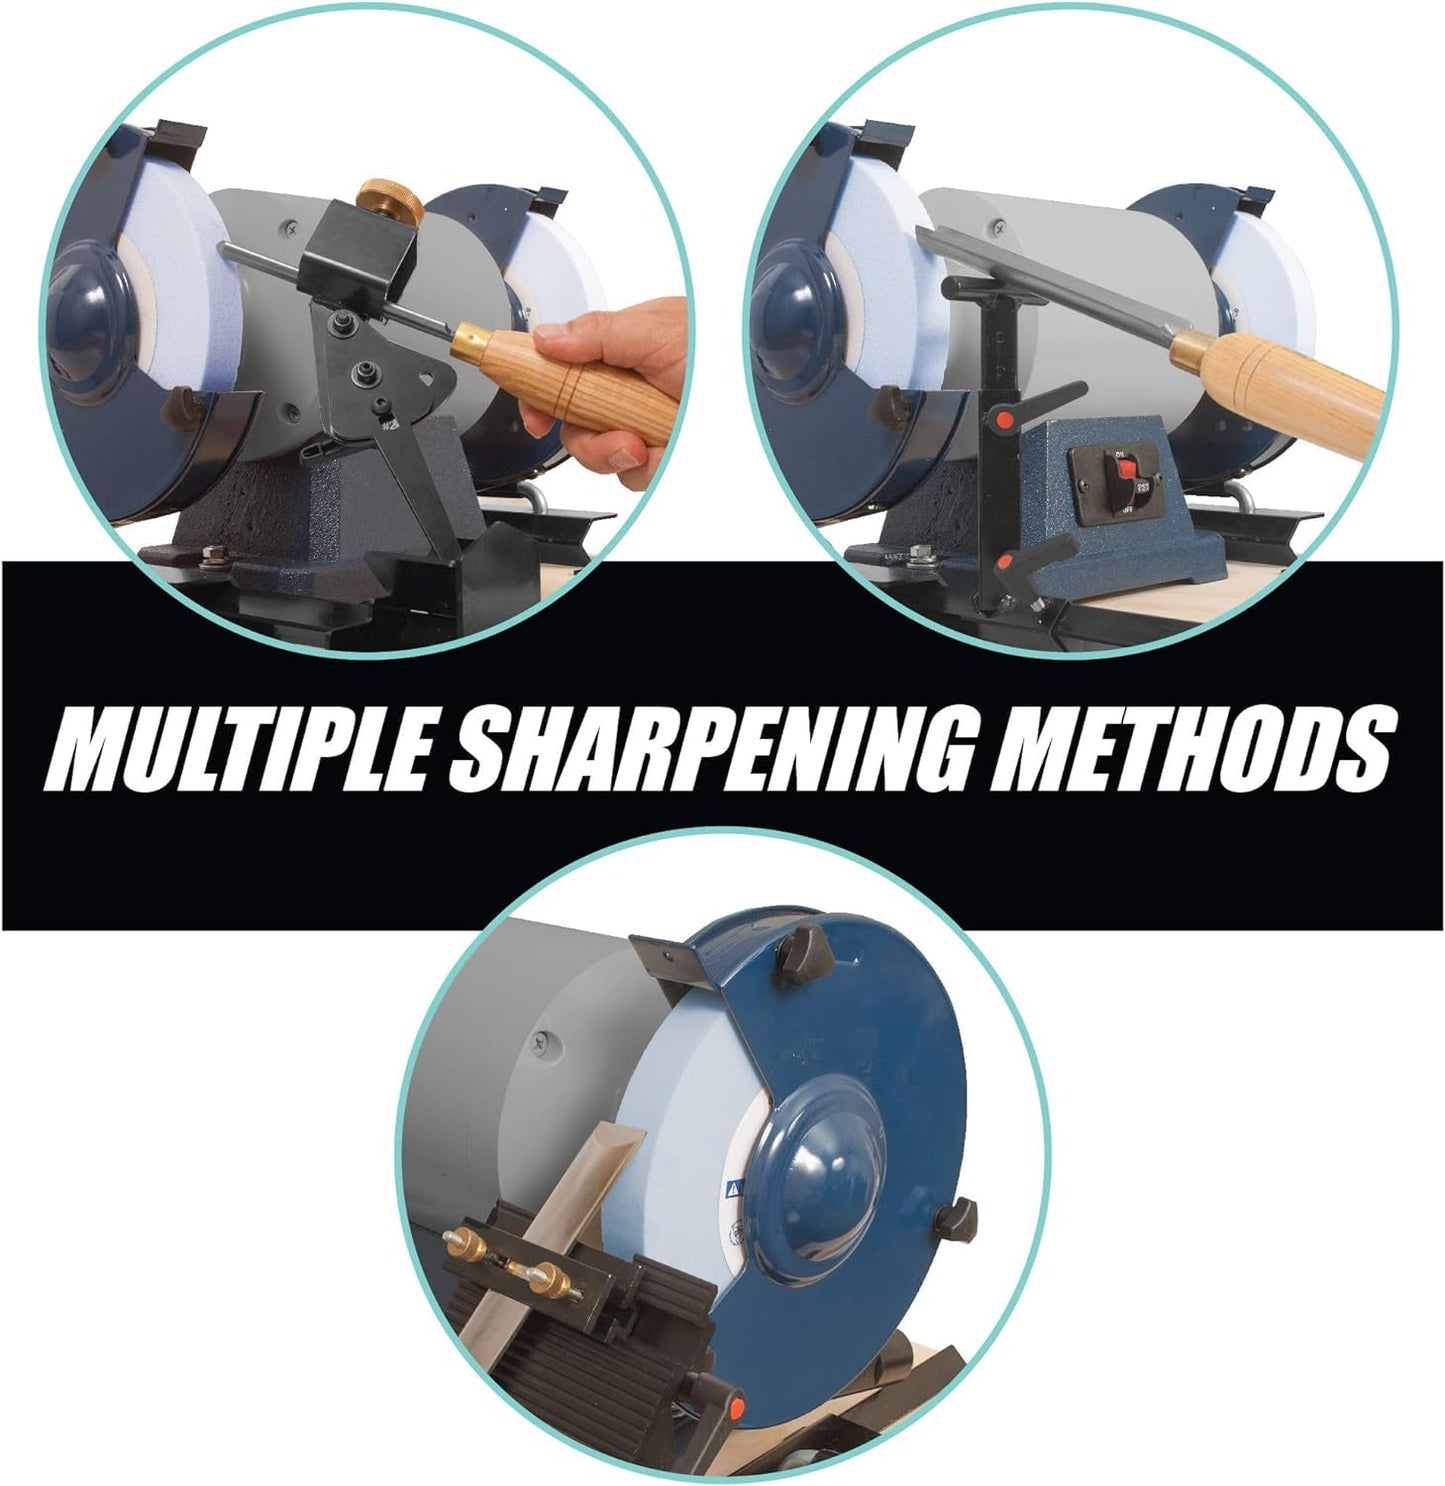 Pro Grind Sharpening System for 6 Inch Grinders to Sharpen Lathe Turning Tools, Chisels, Skews, Bowl Spindle Gouges • Includes Setup Blocks and Quad